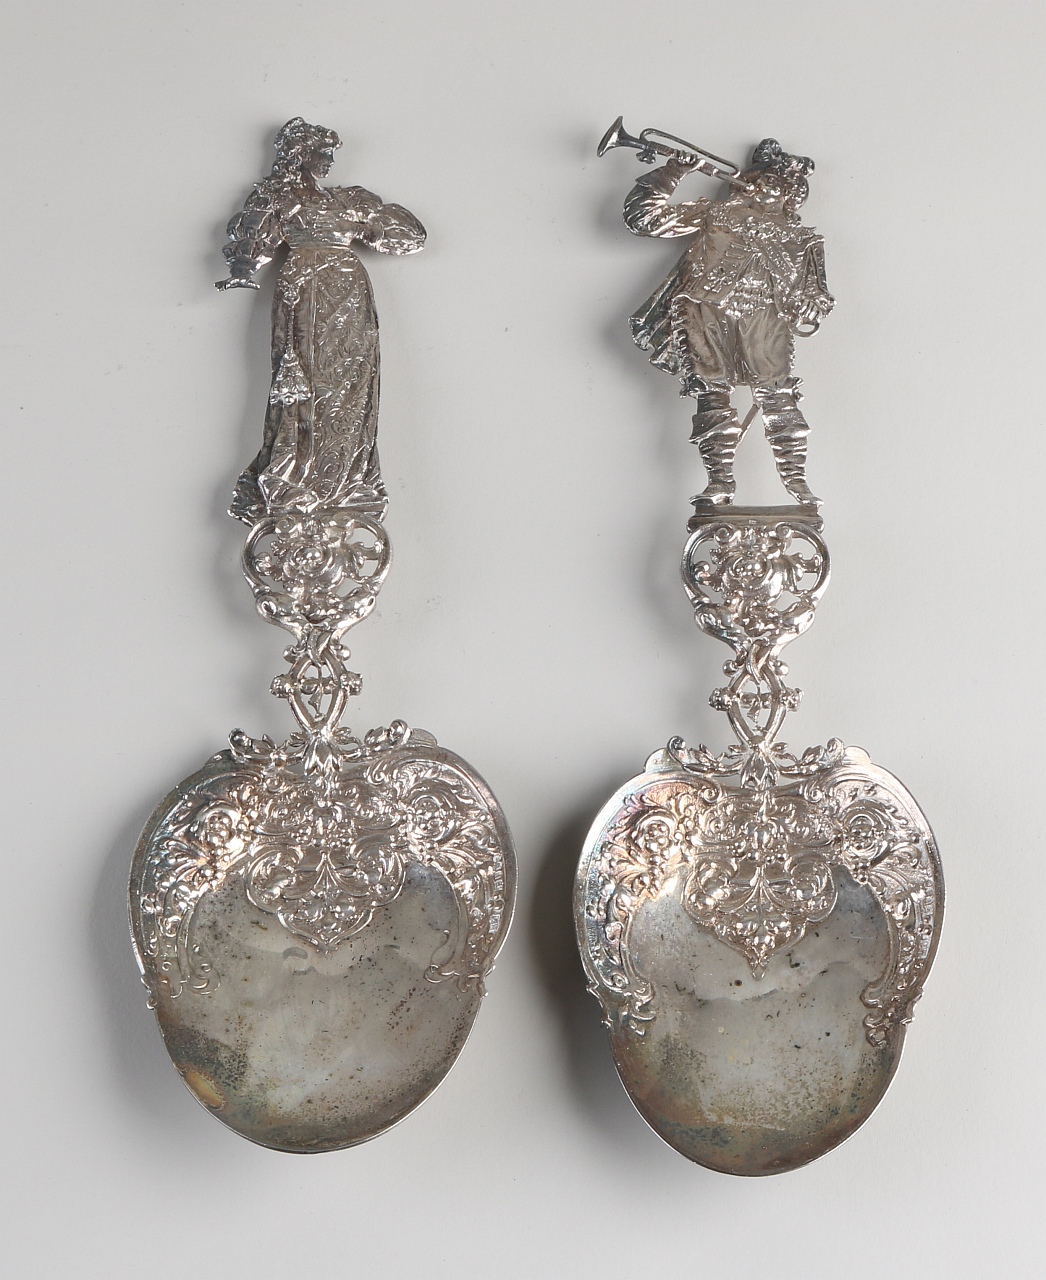 Zwei silberne Dreschflegel, 925/000, mit einer birnenförmigen Schale mit Blumendekor und einem tei - Image 2 of 2